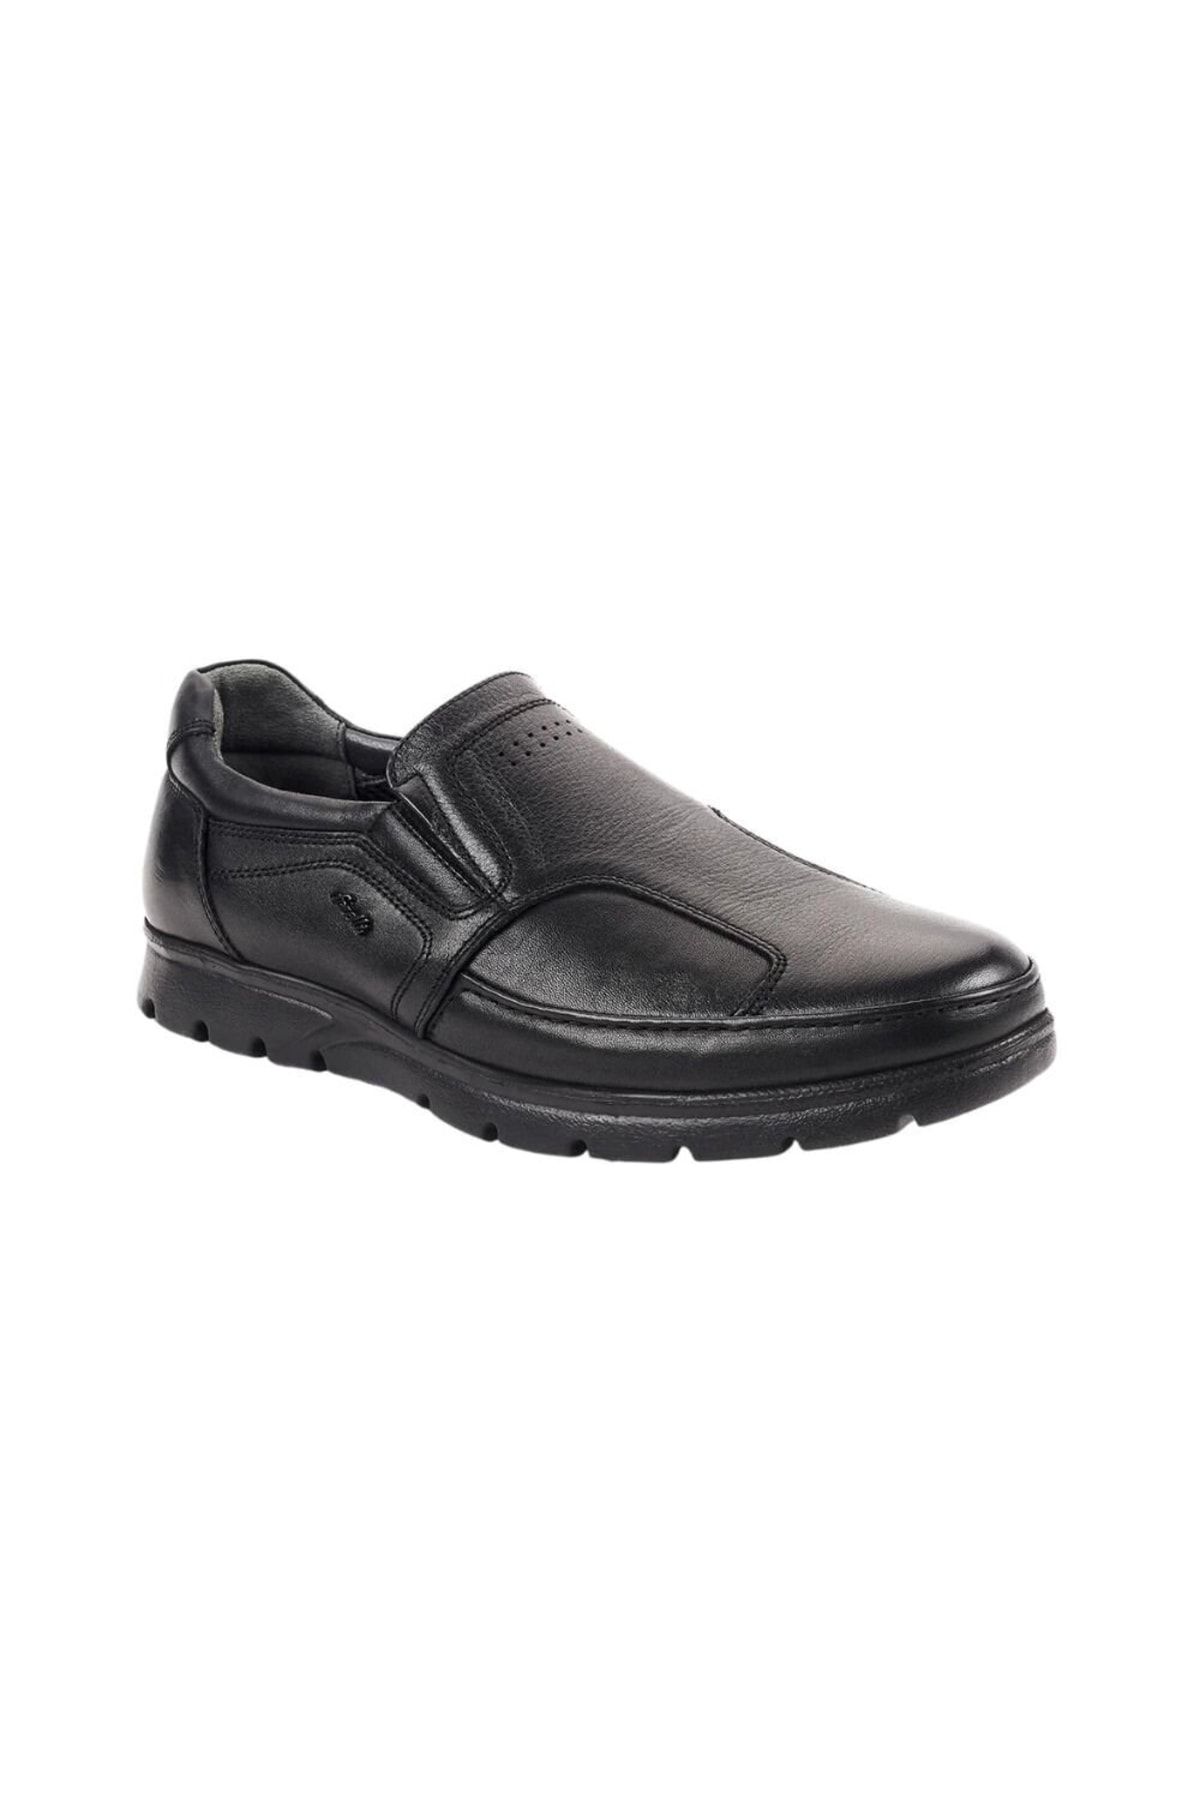 Forelli 32606-h Hoka Siyah Erkek Comfort Deri Kemik Ayakkabısı